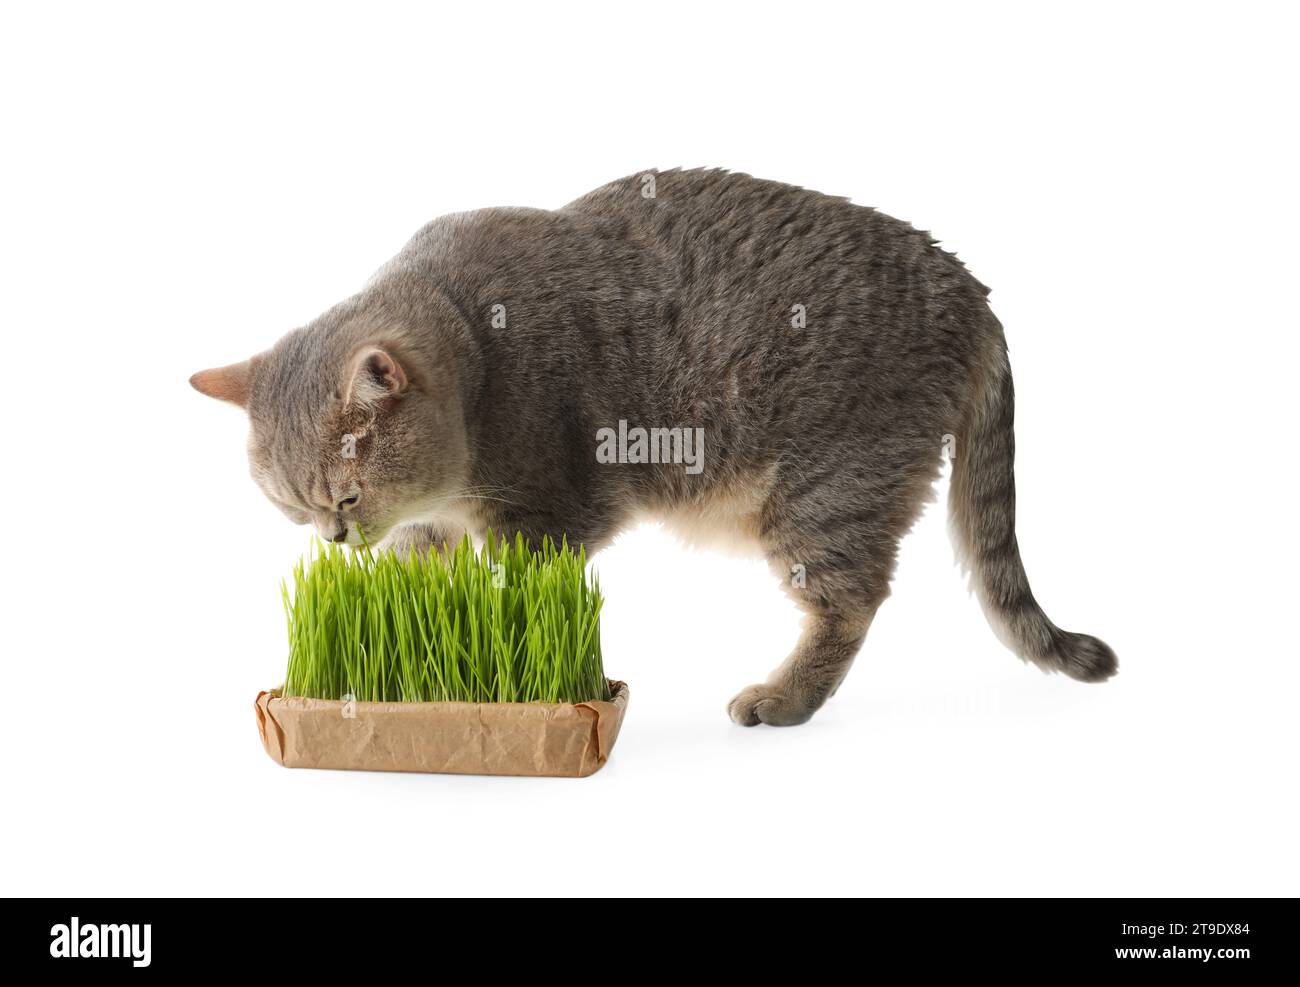 Lindo gato y hierba verde fresca aislada en blanco Foto de stock